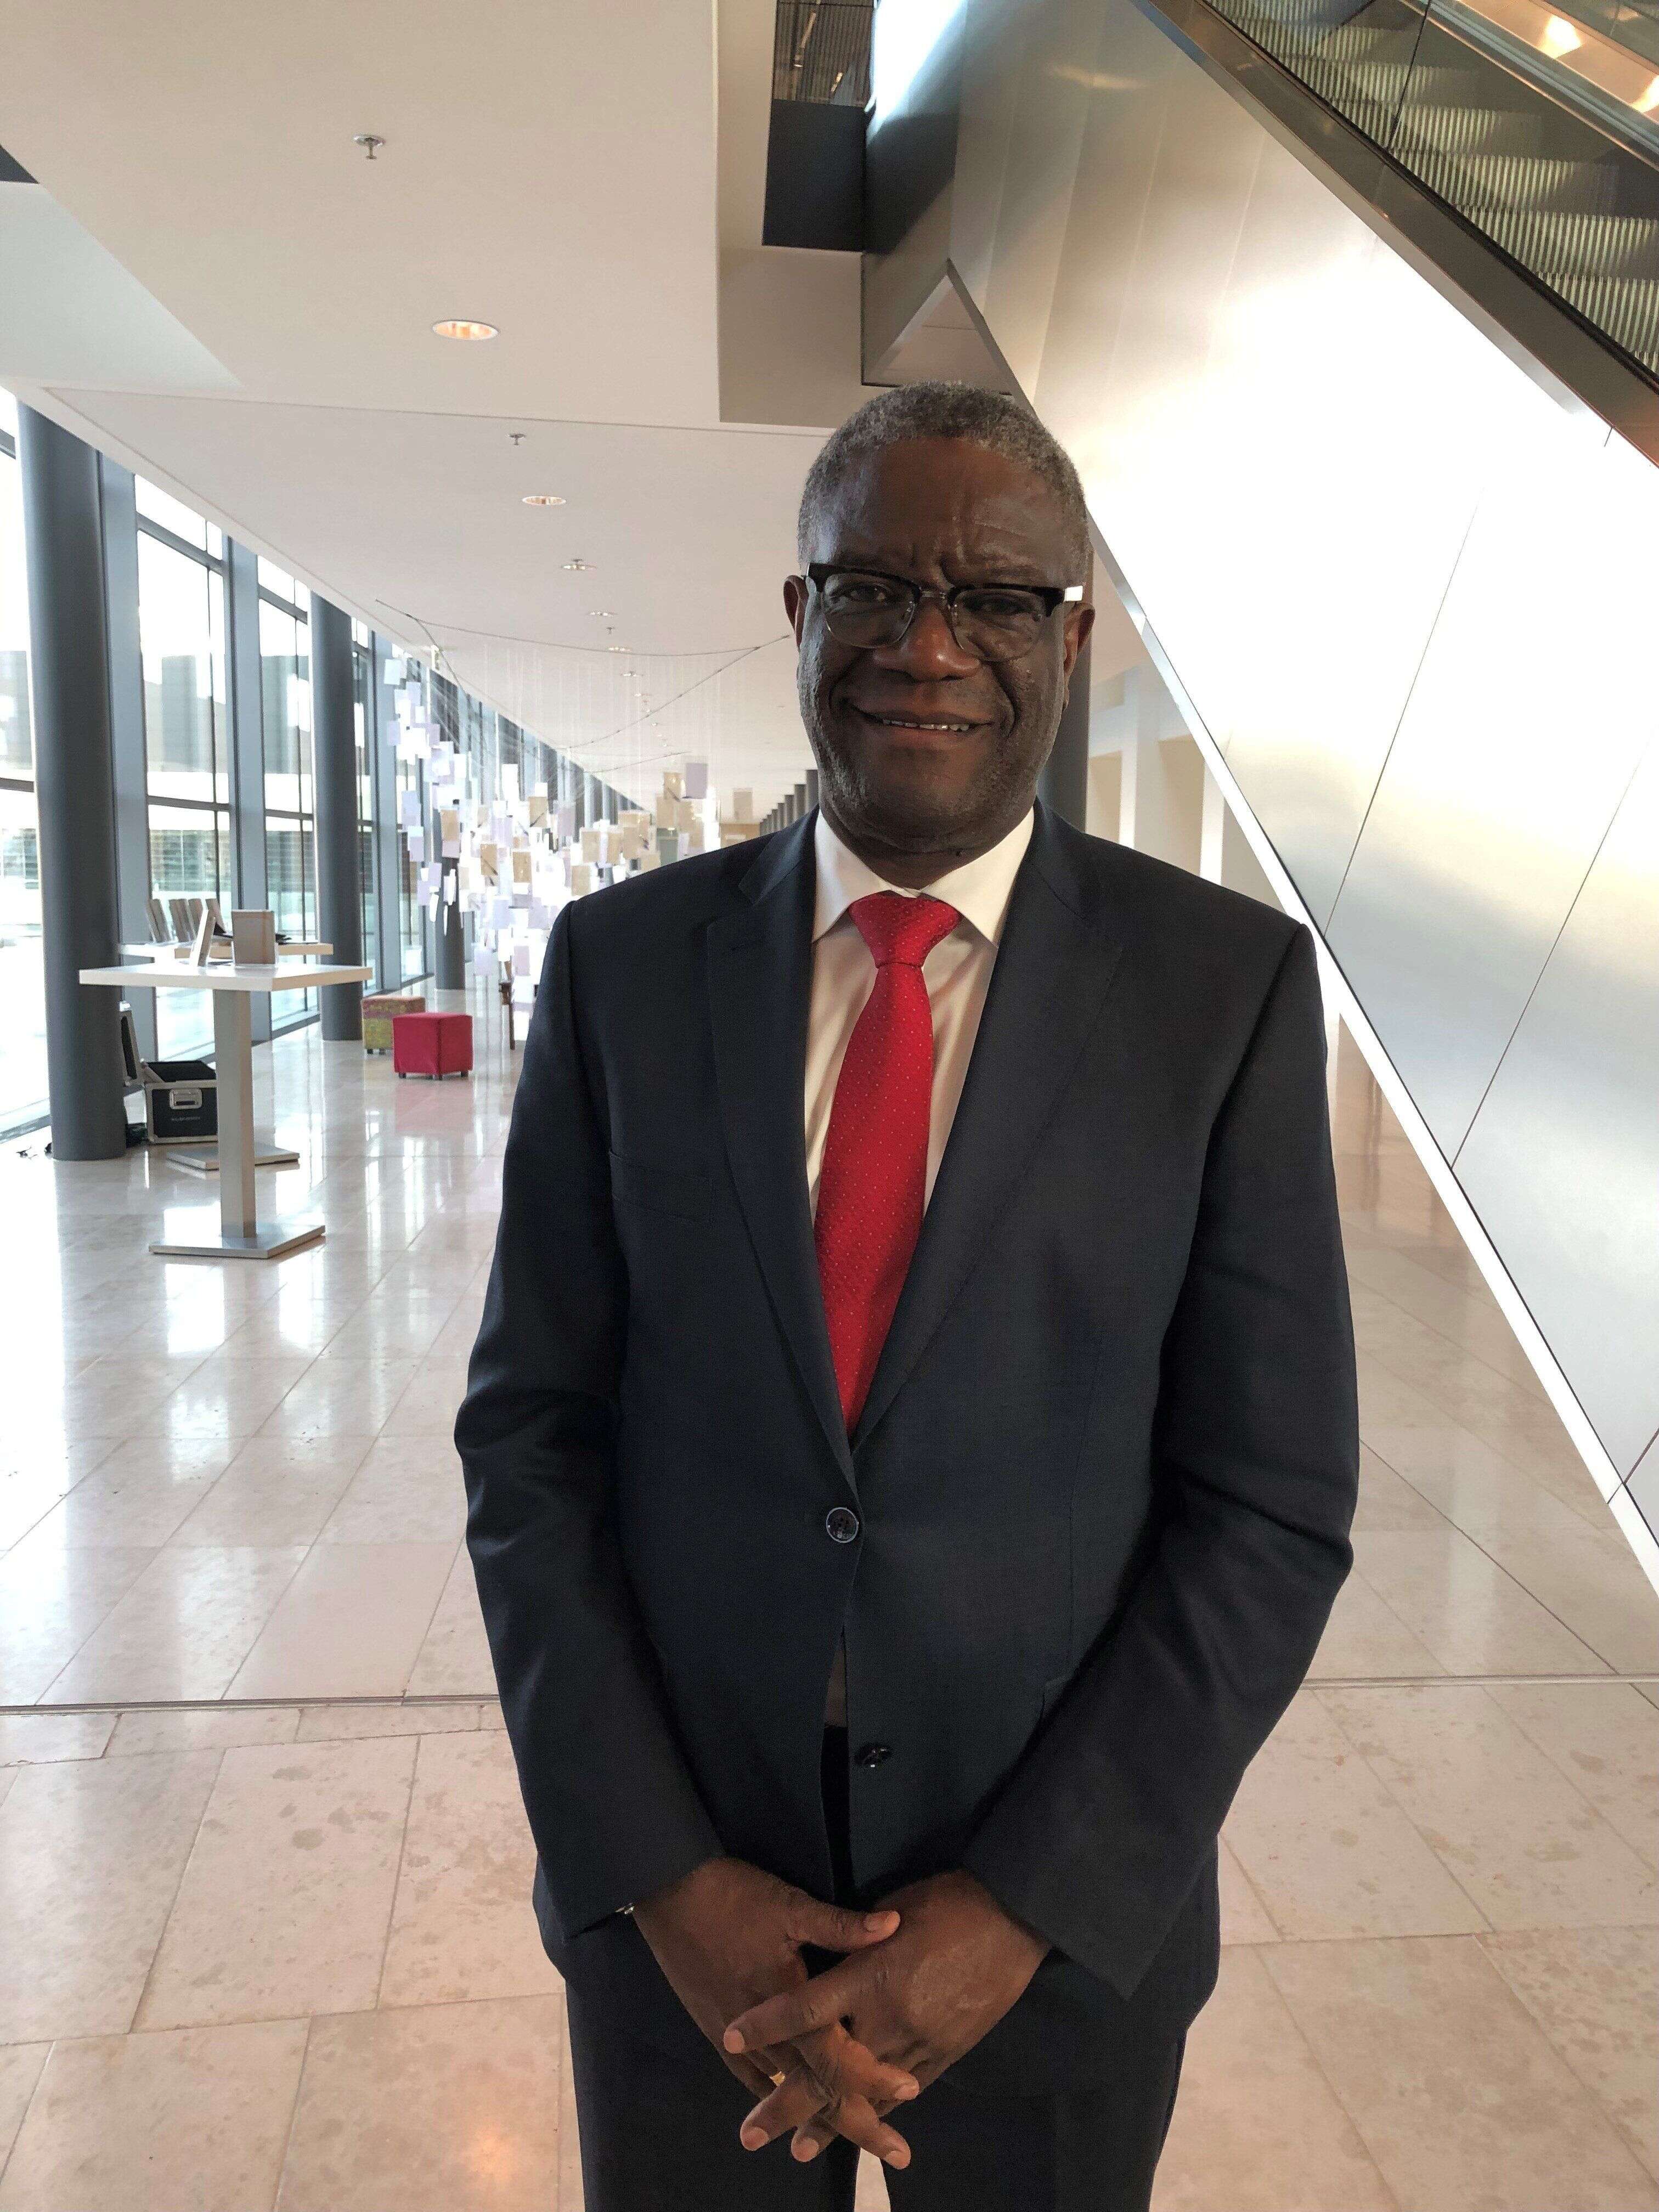 Denis Mukwege soigne depuis deux décennies les victimes de violences sexuelles dans l'hôpital de Panzi qu'il a fondé à Bukavu, dans l'Est de la République démocratique du Congo (RDC), une région en proie aux violences chroniques.